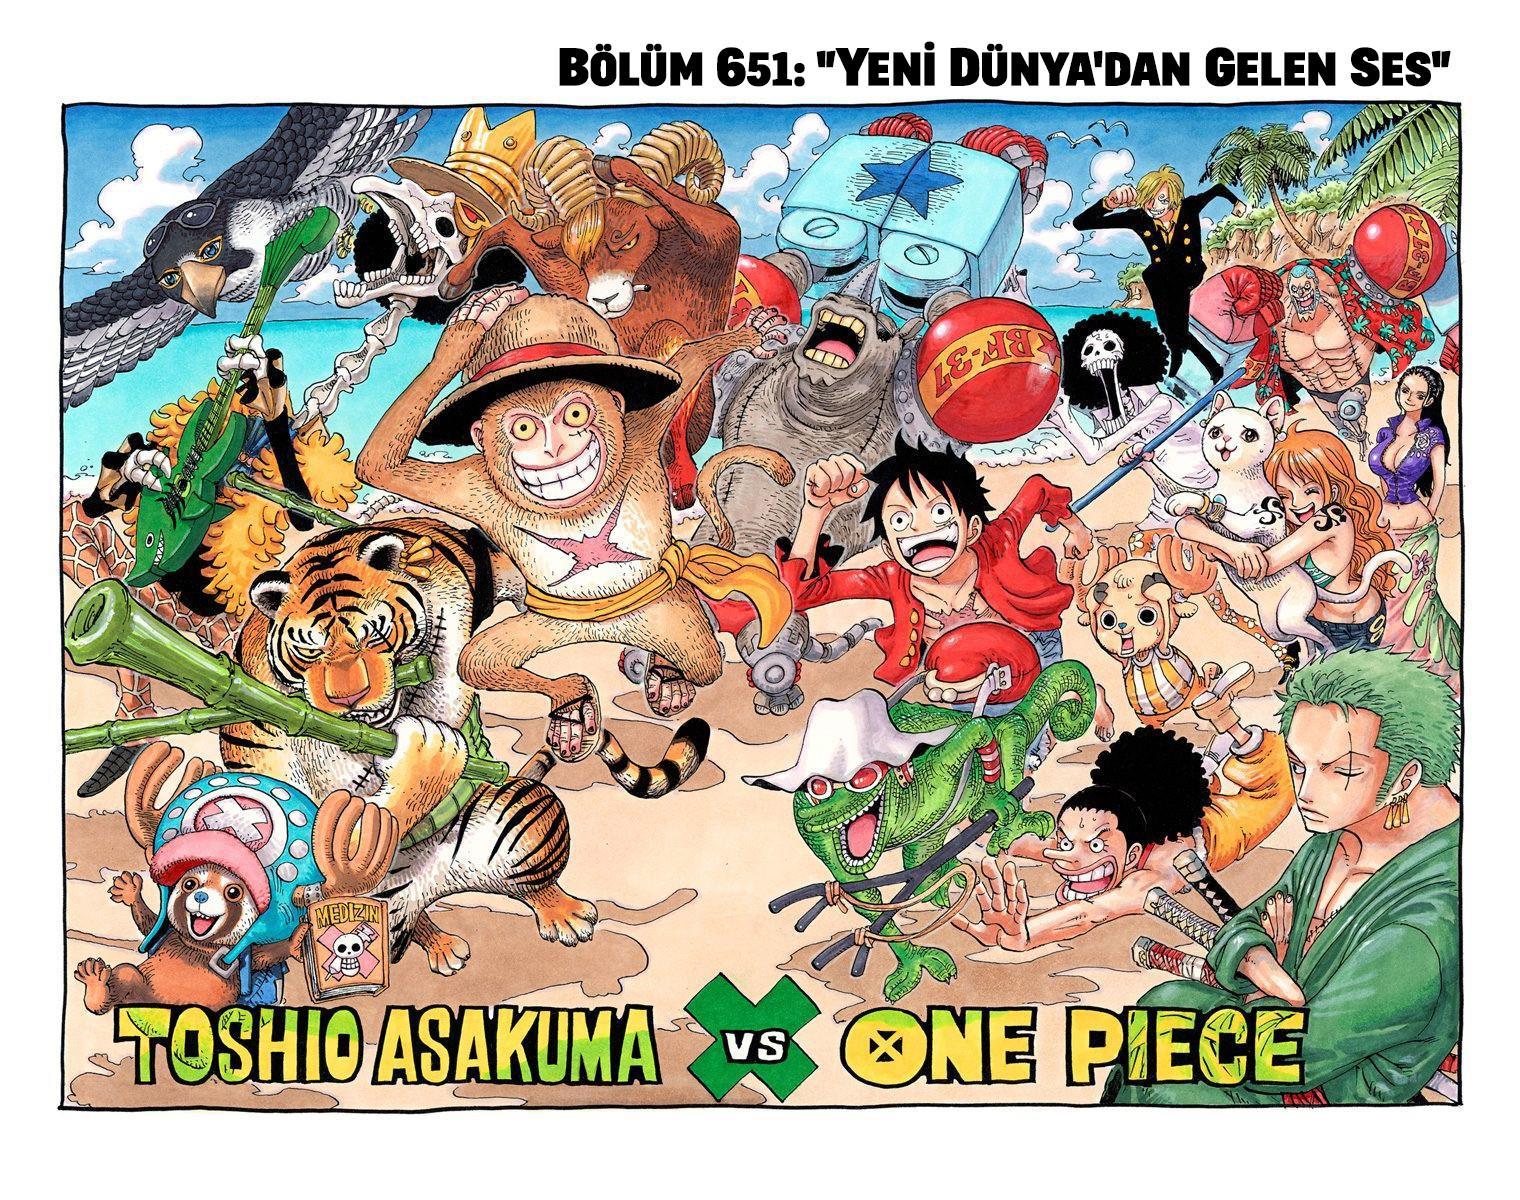 One Piece [Renkli] mangasının 0651 bölümünün 2. sayfasını okuyorsunuz.